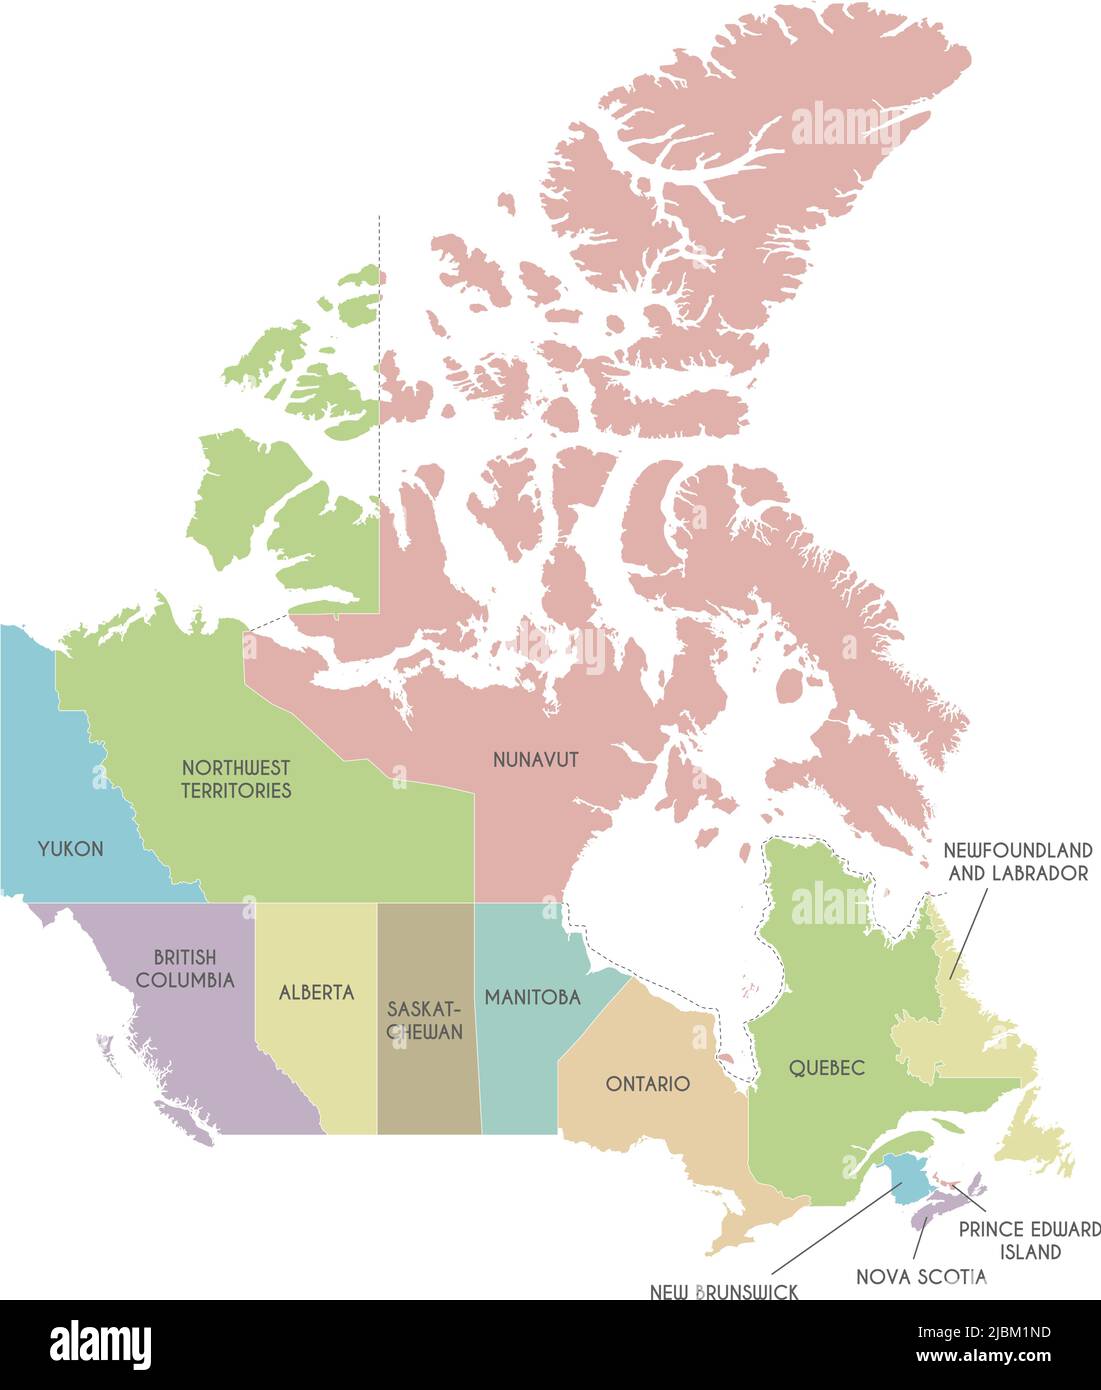 Carte vectorielle du Canada avec les provinces, les territoires et les divisions administratives. Calques modifiables et clairement étiquetés. Illustration de Vecteur